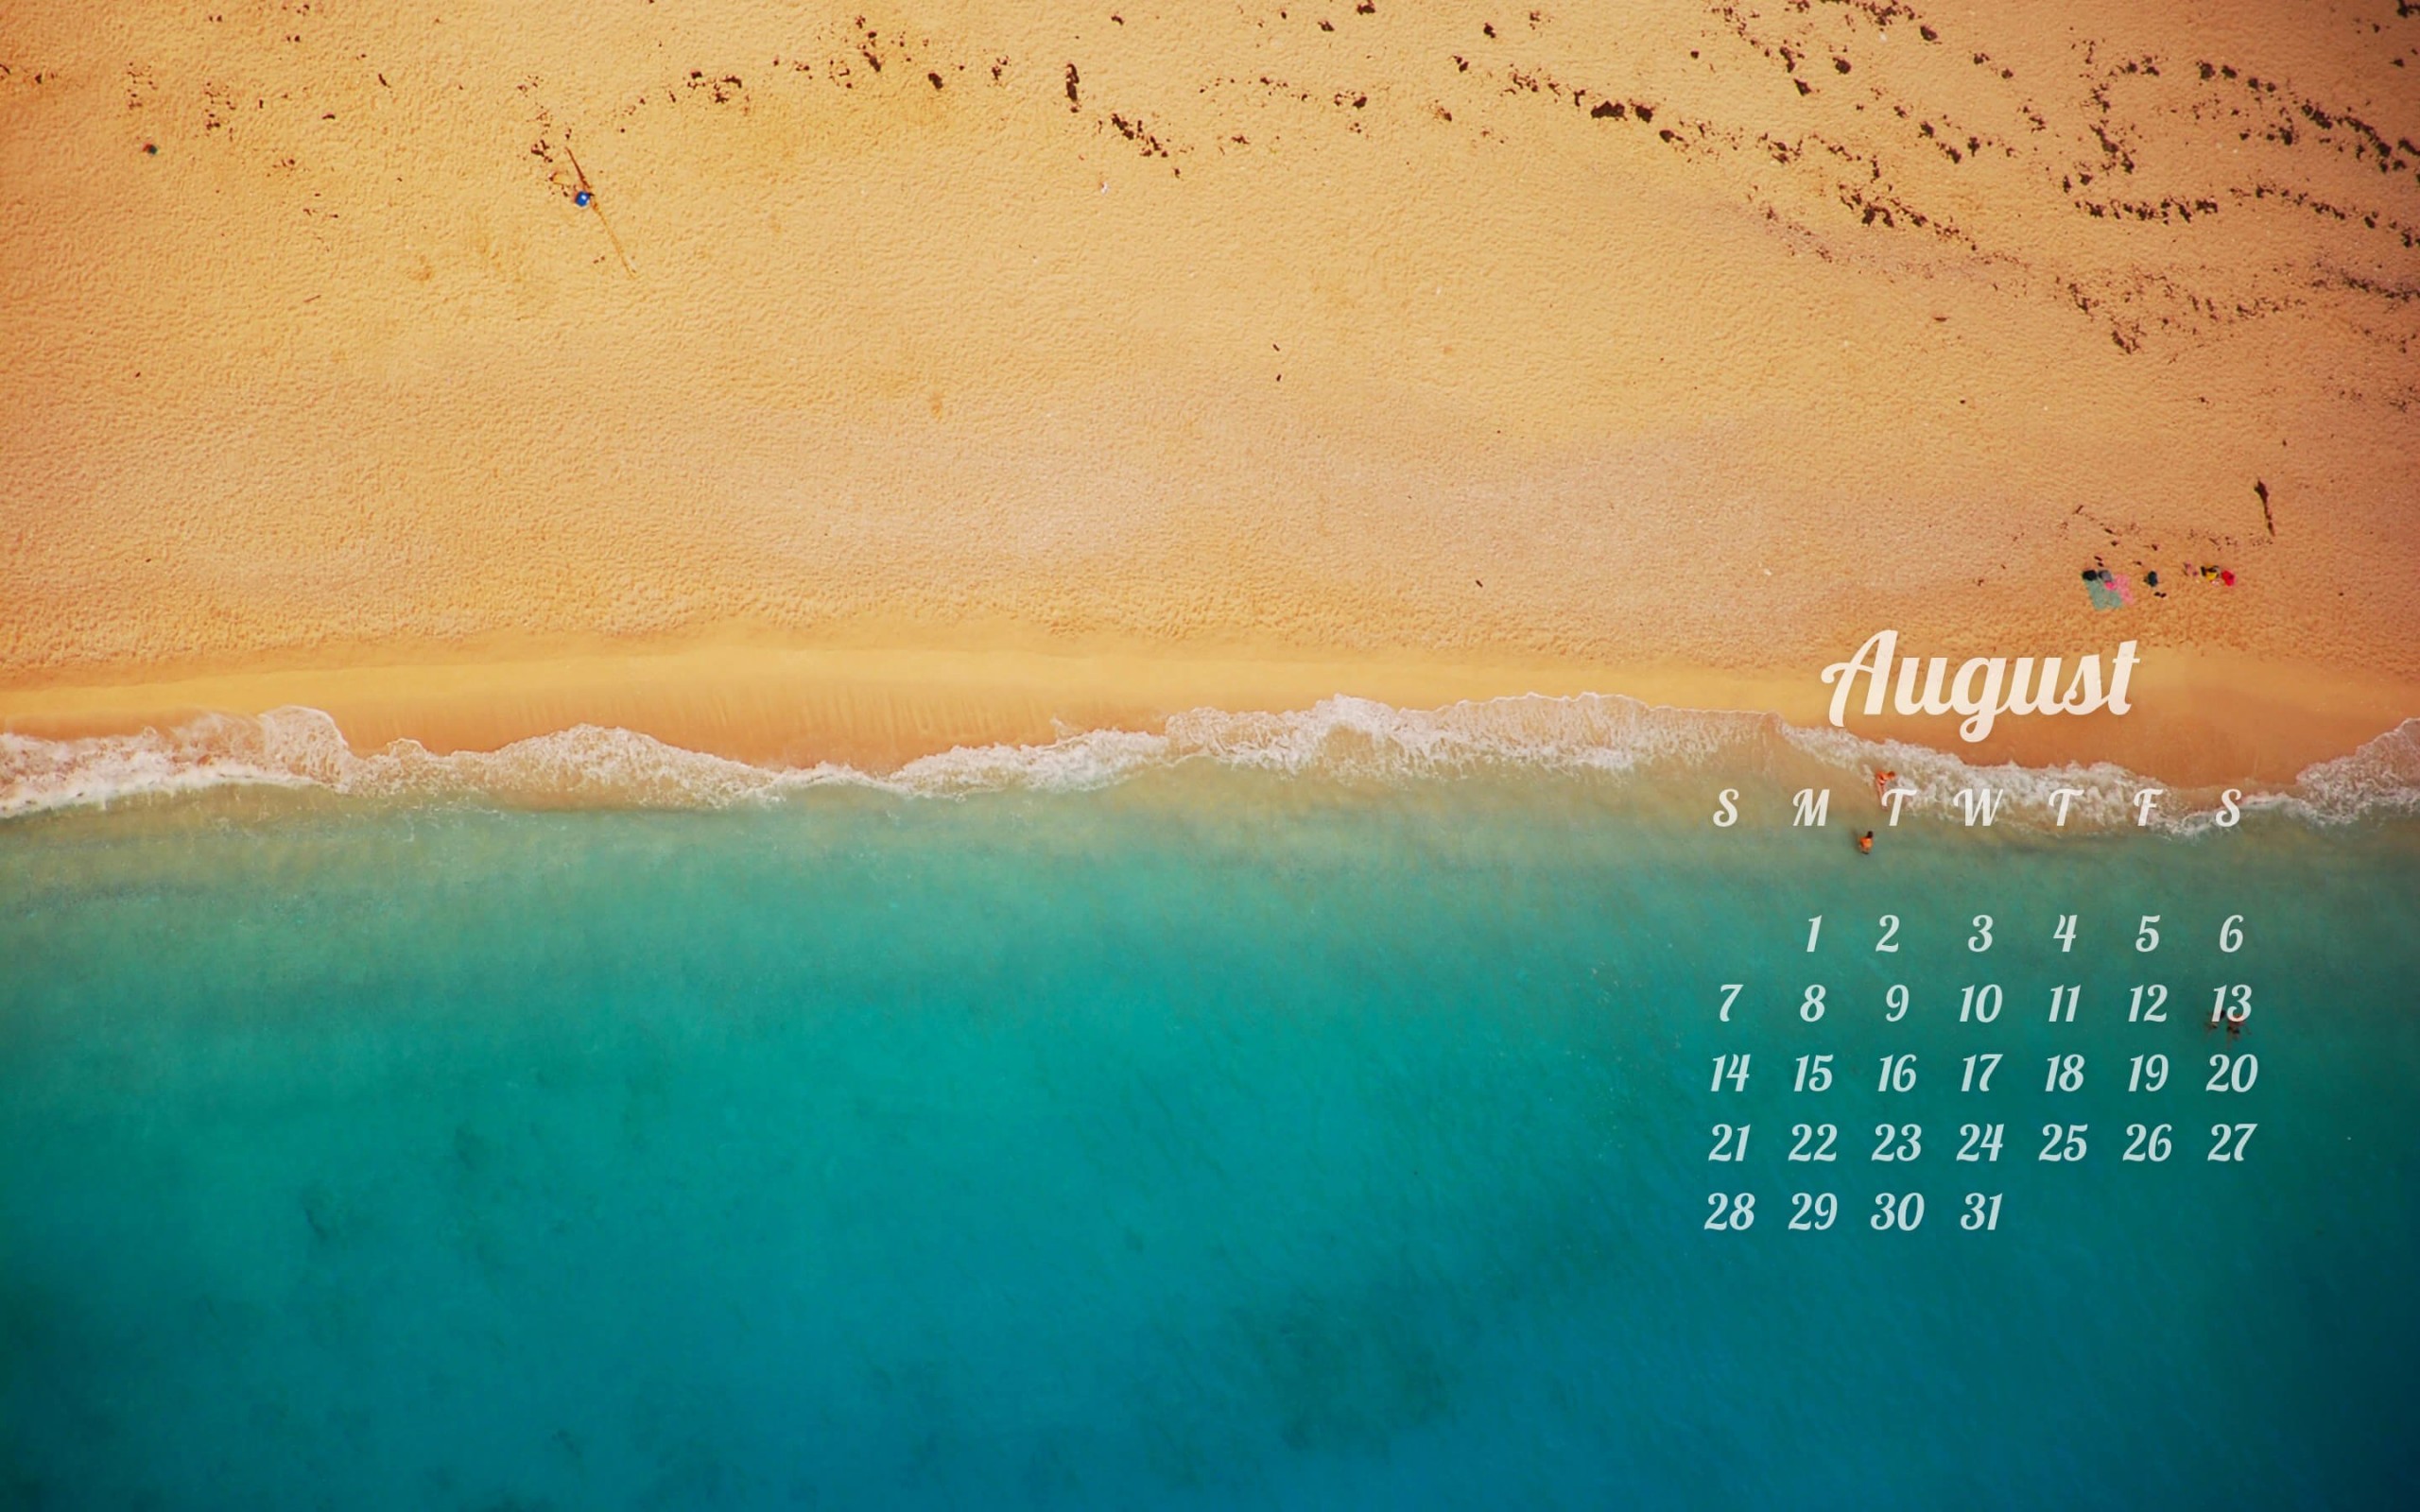 August 2016 Calendar Wallpaper for Desktop 2560x1600